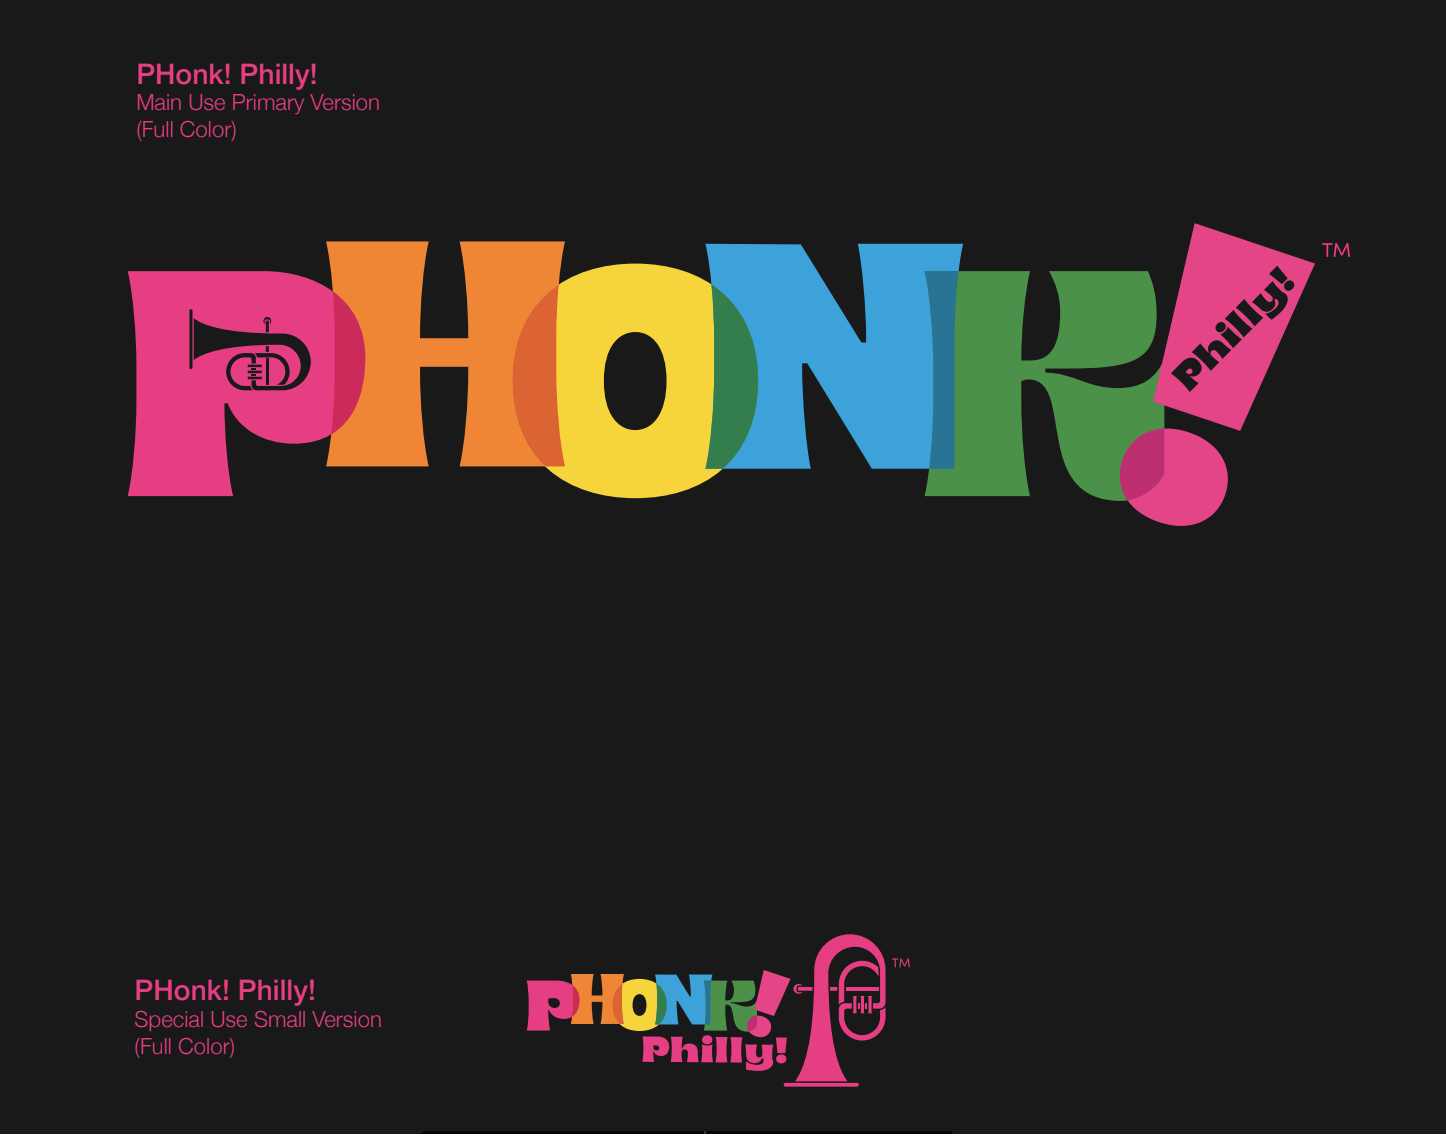 The Phonk Phenomena 